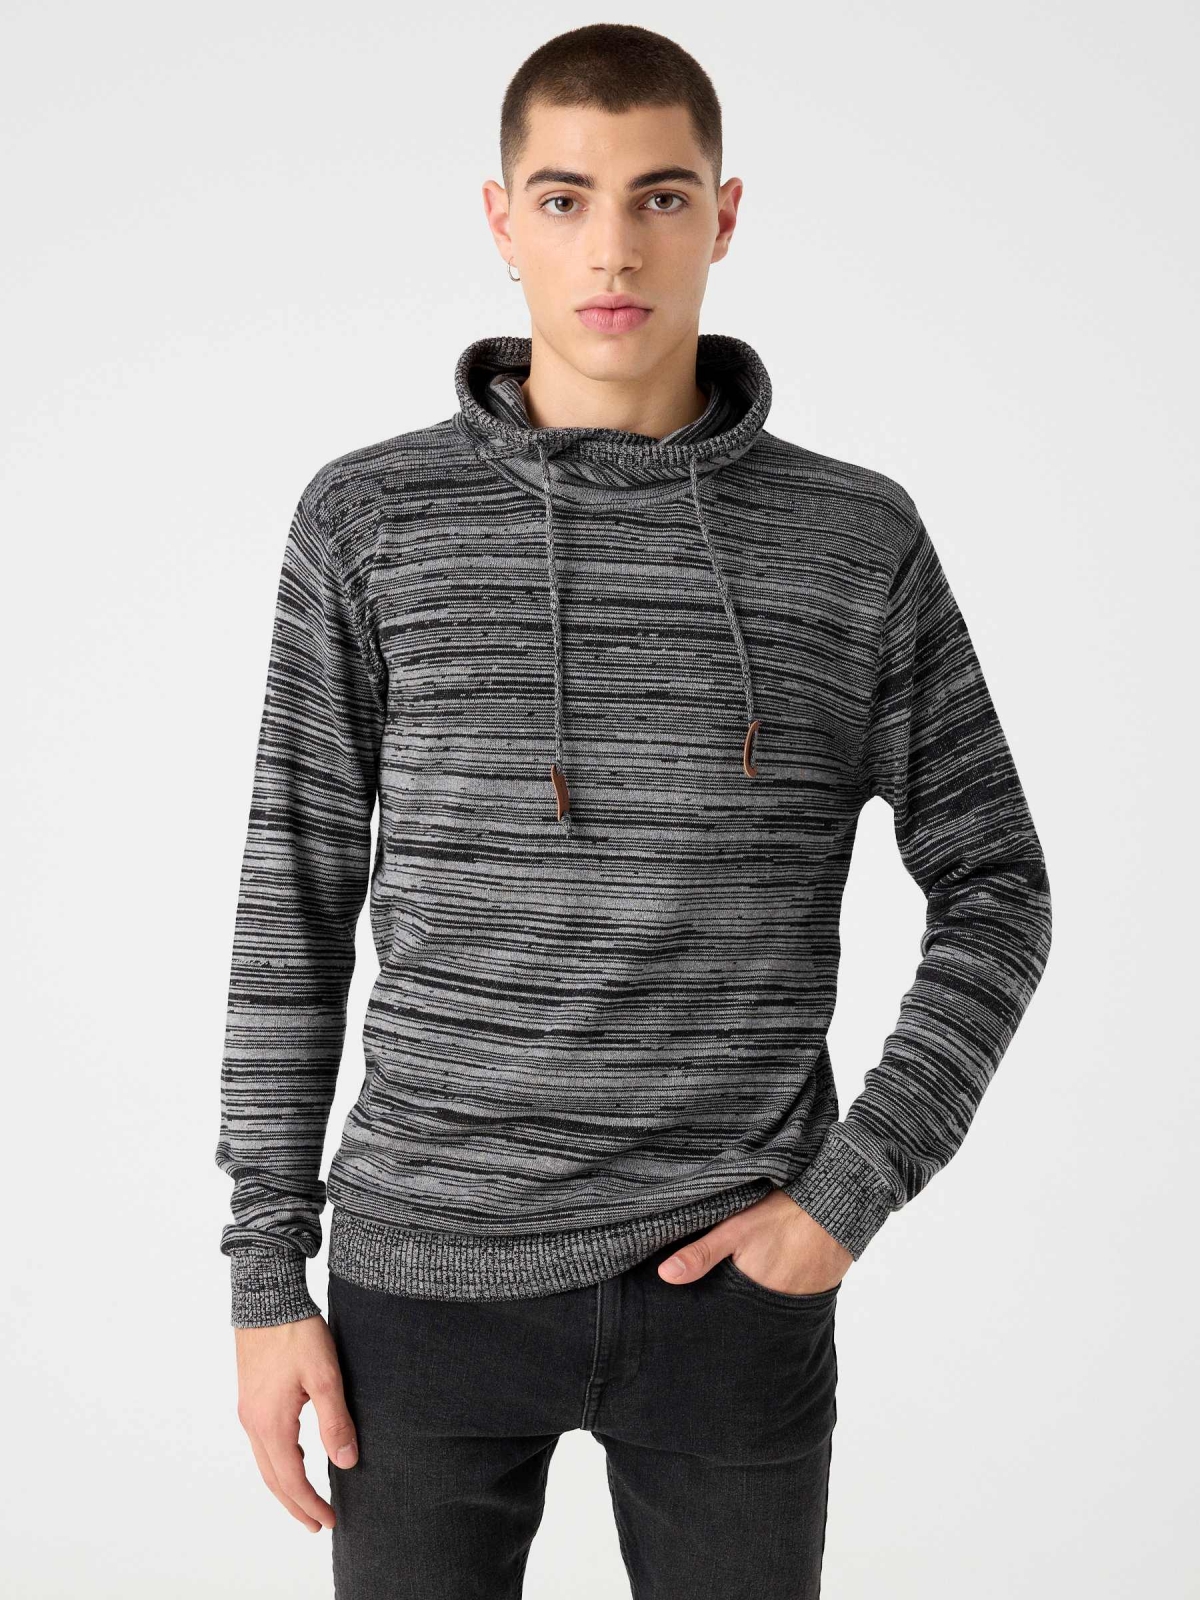 Fleece turtleneck sweater dark grey middle front view